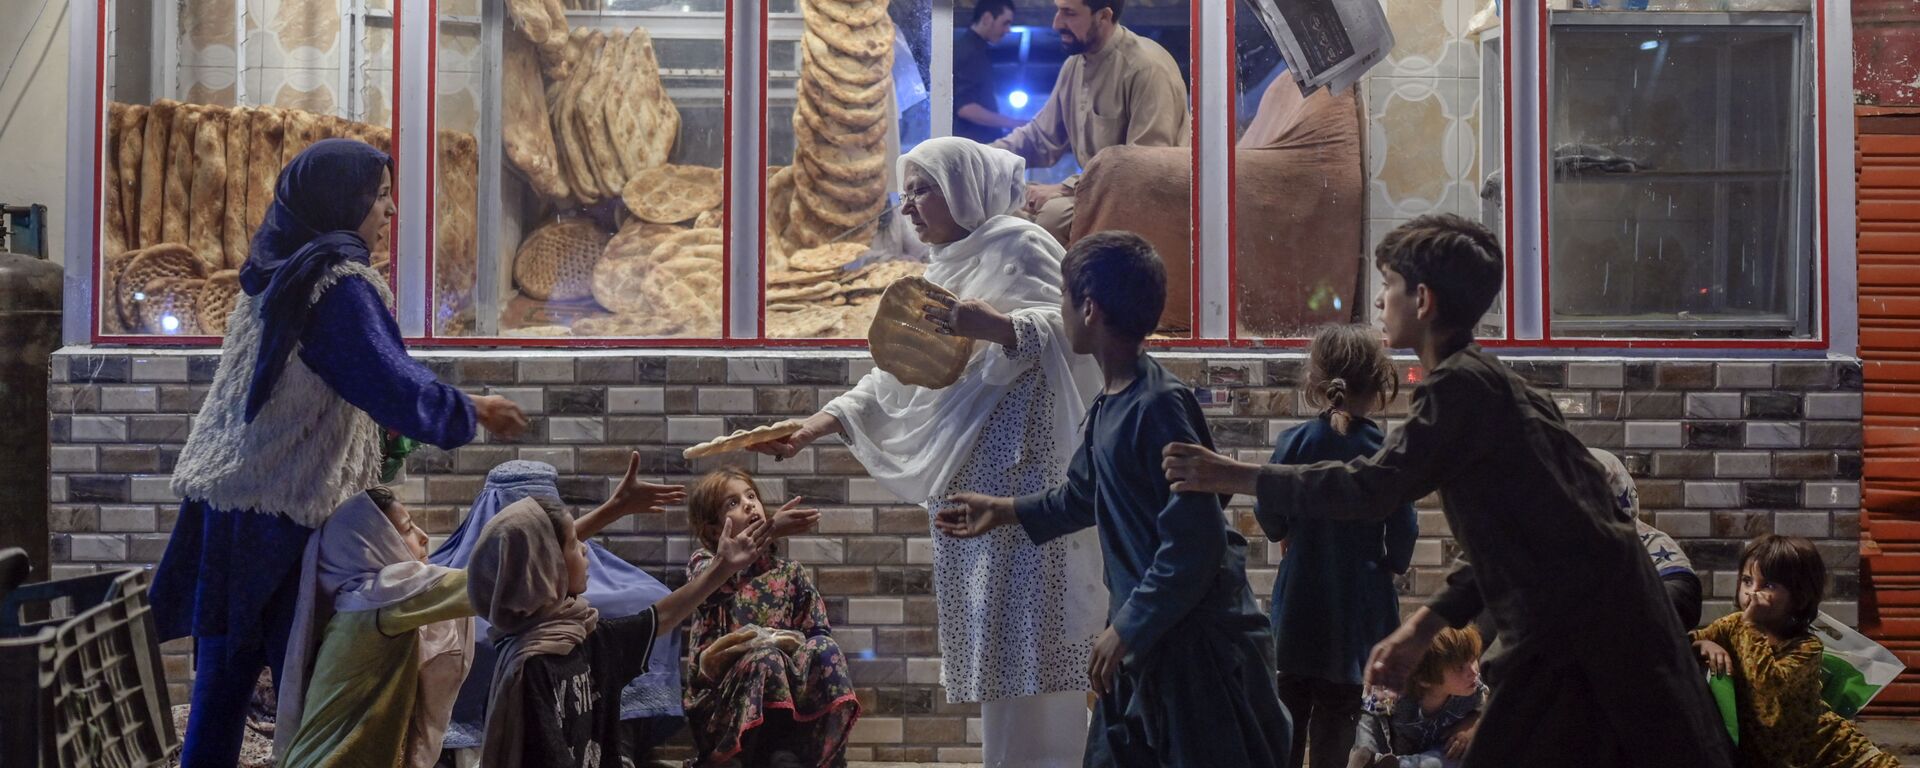 Женщина раздает хлеб нуждающимся детям перед пекарней в Кабуле - Sputnik Азербайджан, 1920, 26.09.2021